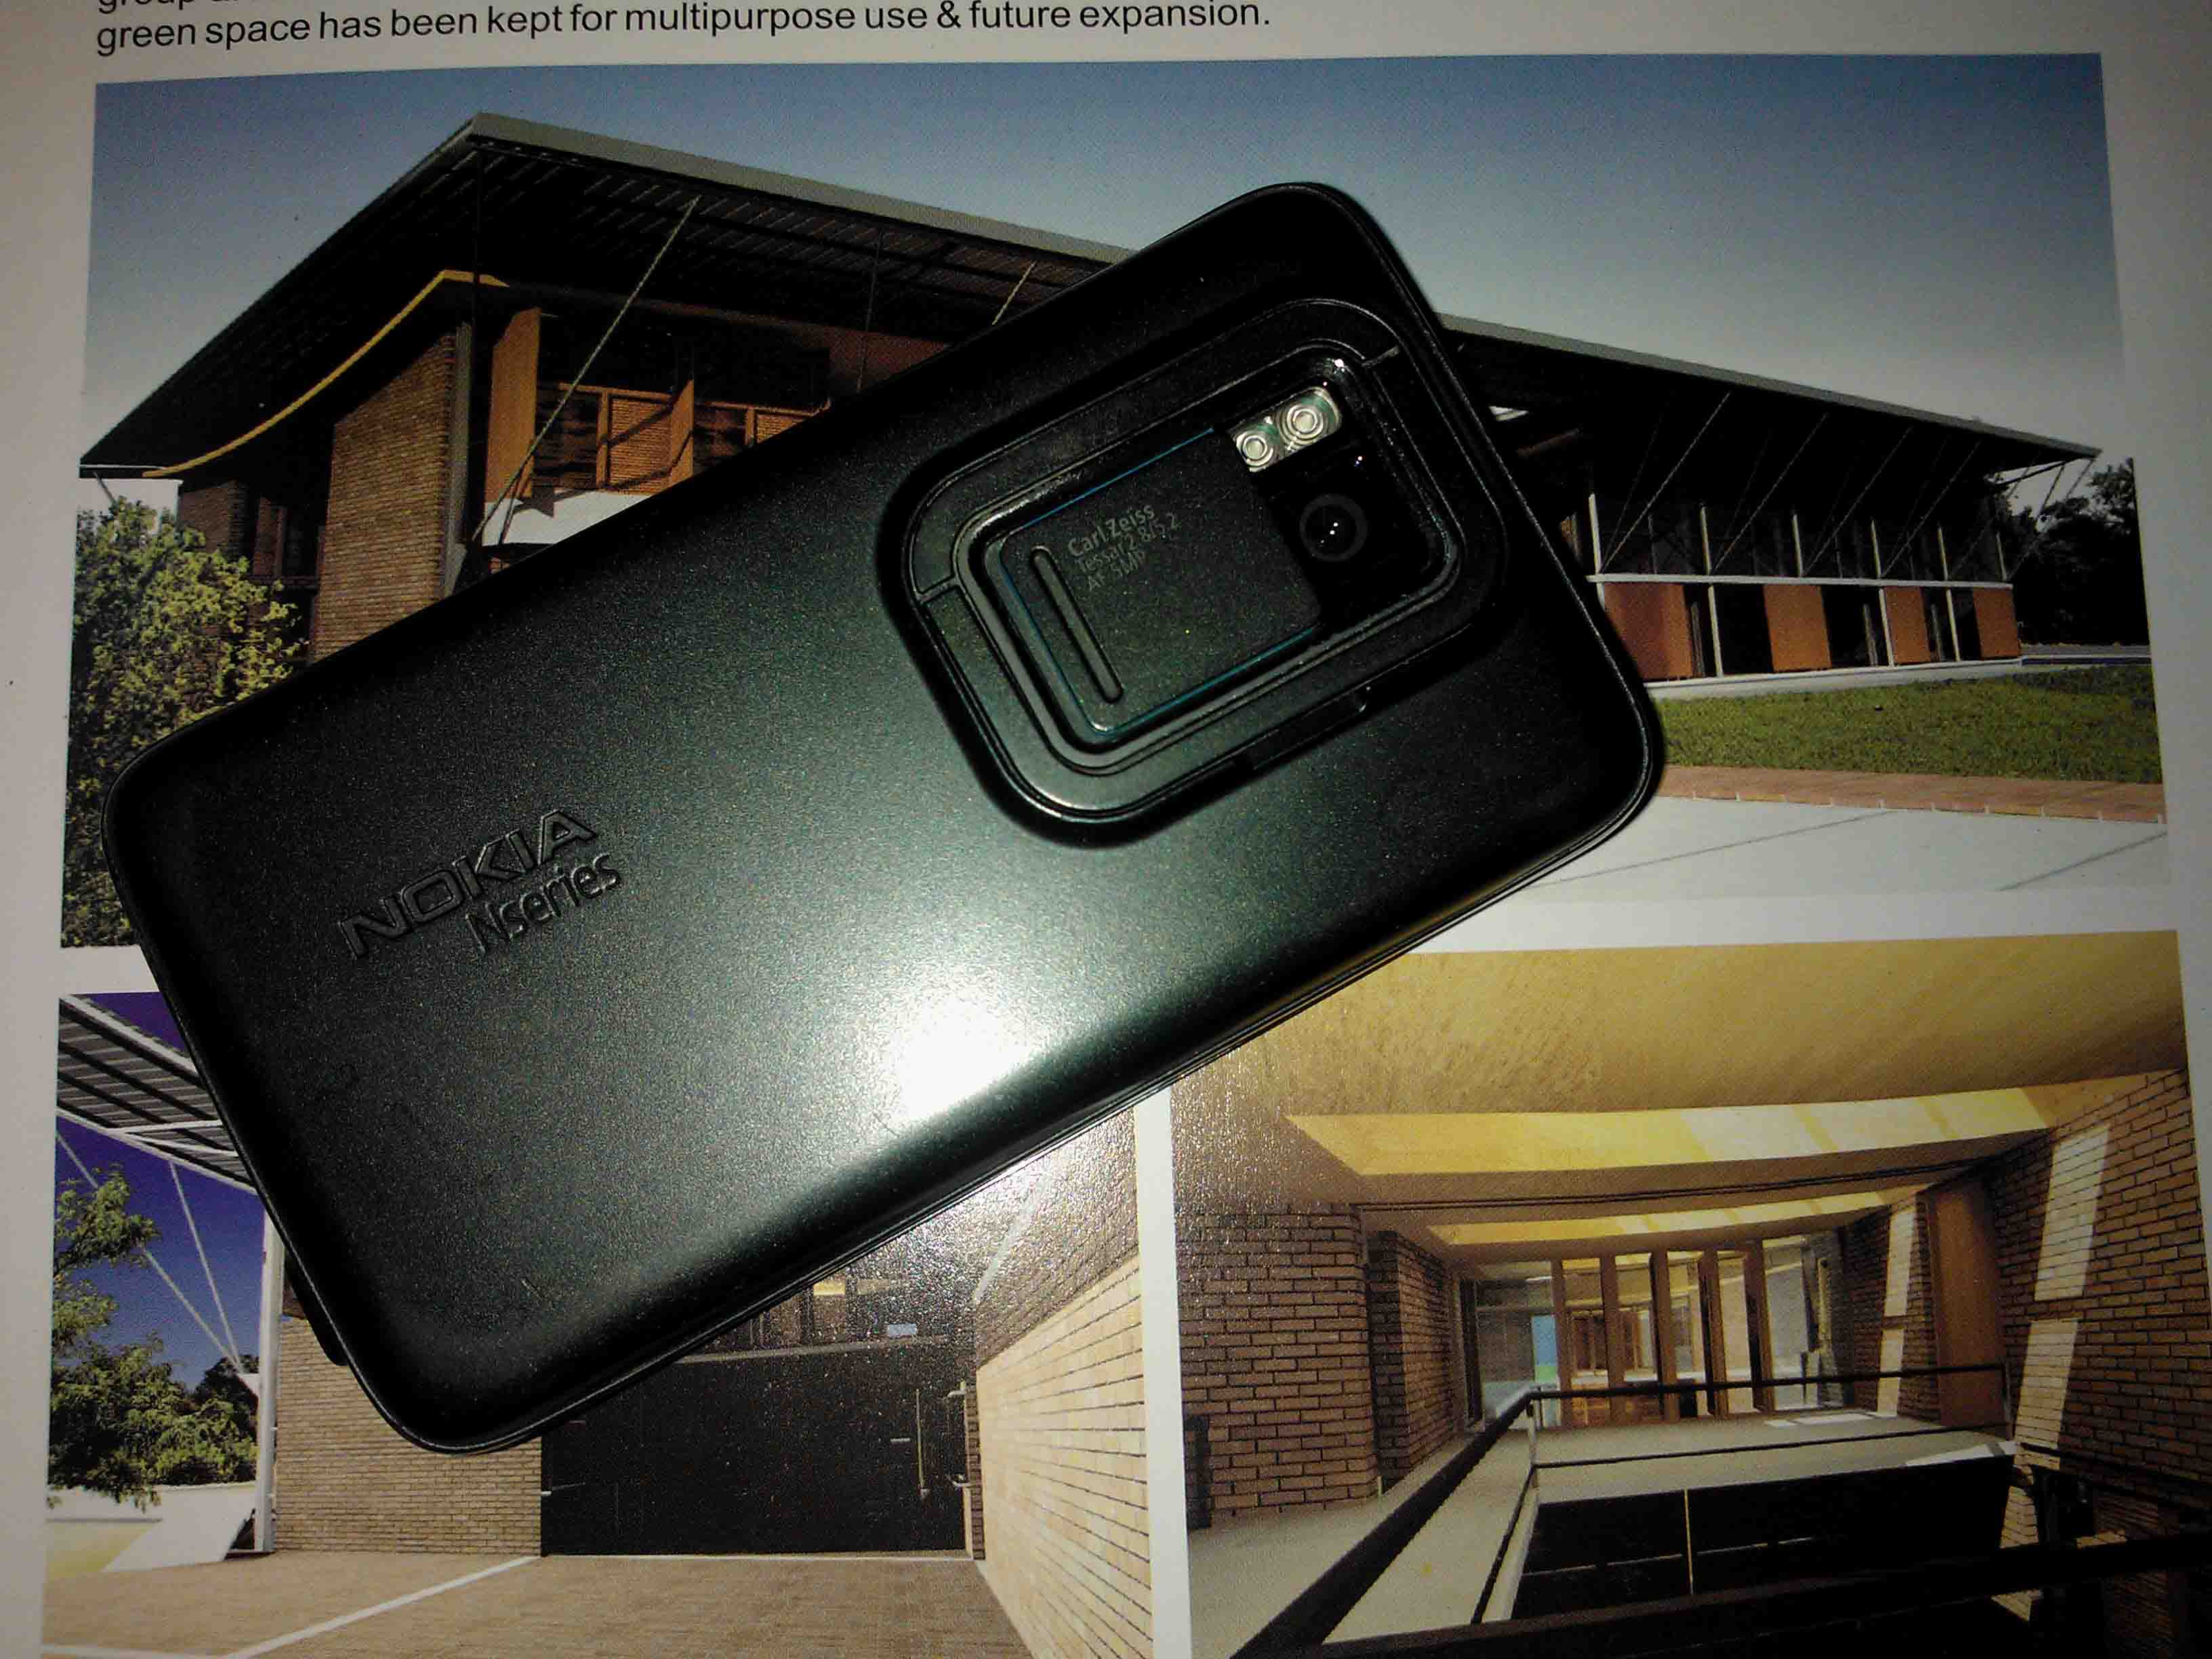 NOKIA N900 SALE LINUX BASED OS - MAEMO5 large image 1